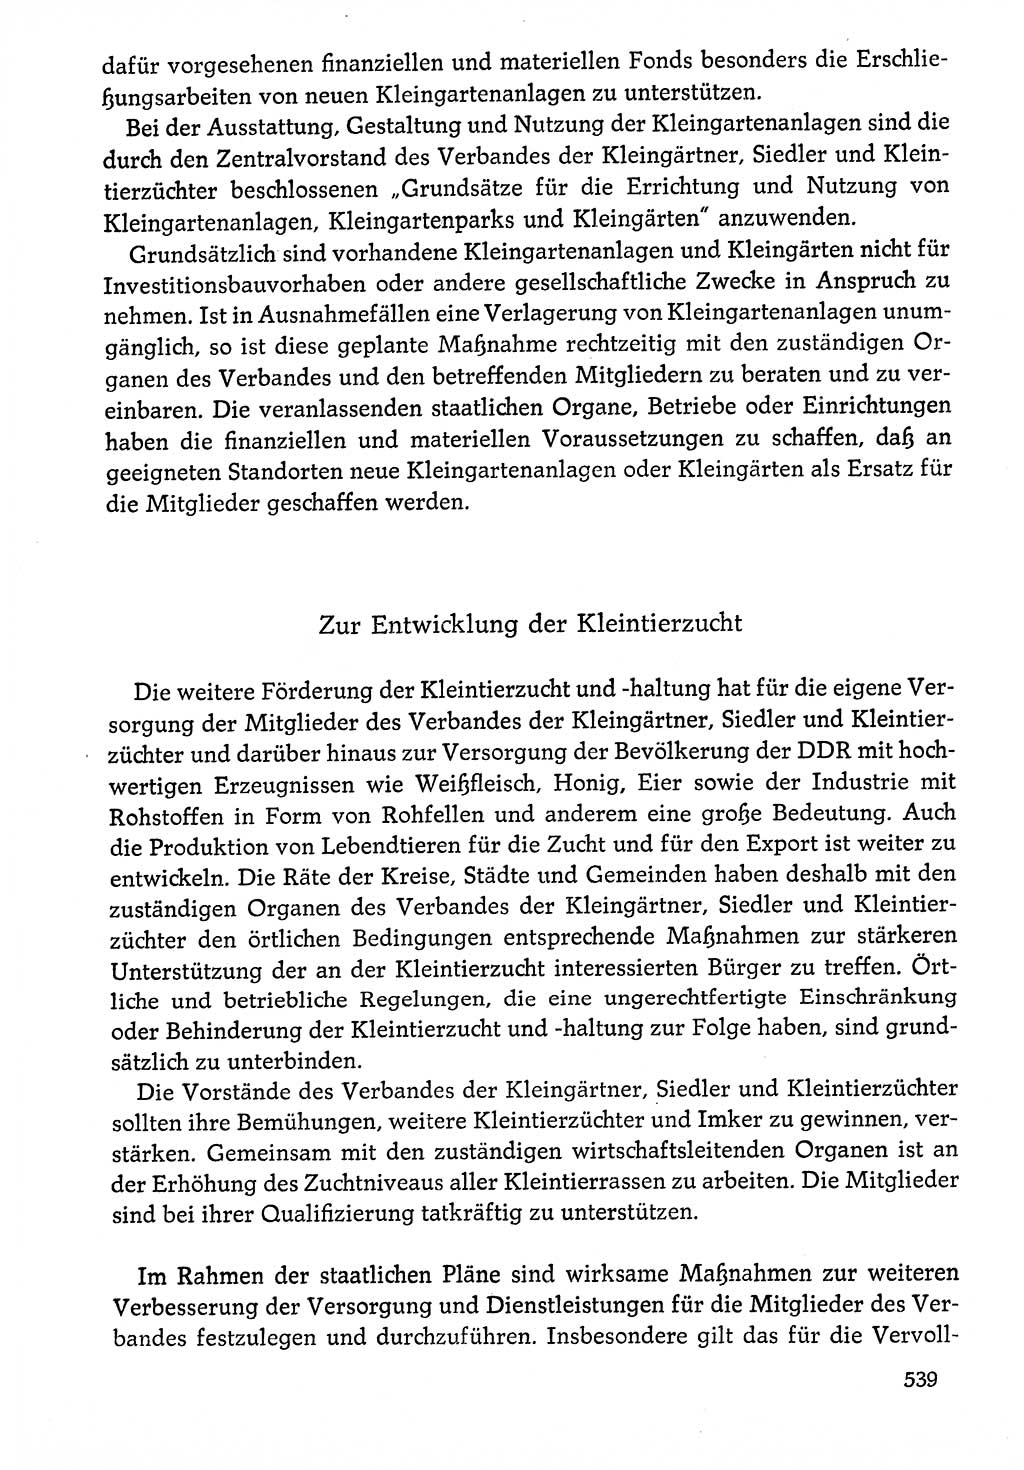 Dokumente der Sozialistischen Einheitspartei Deutschlands (SED) [Deutsche Demokratische Republik (DDR)] 1976-1977, Seite 539 (Dok. SED DDR 1976-1977, S. 539)